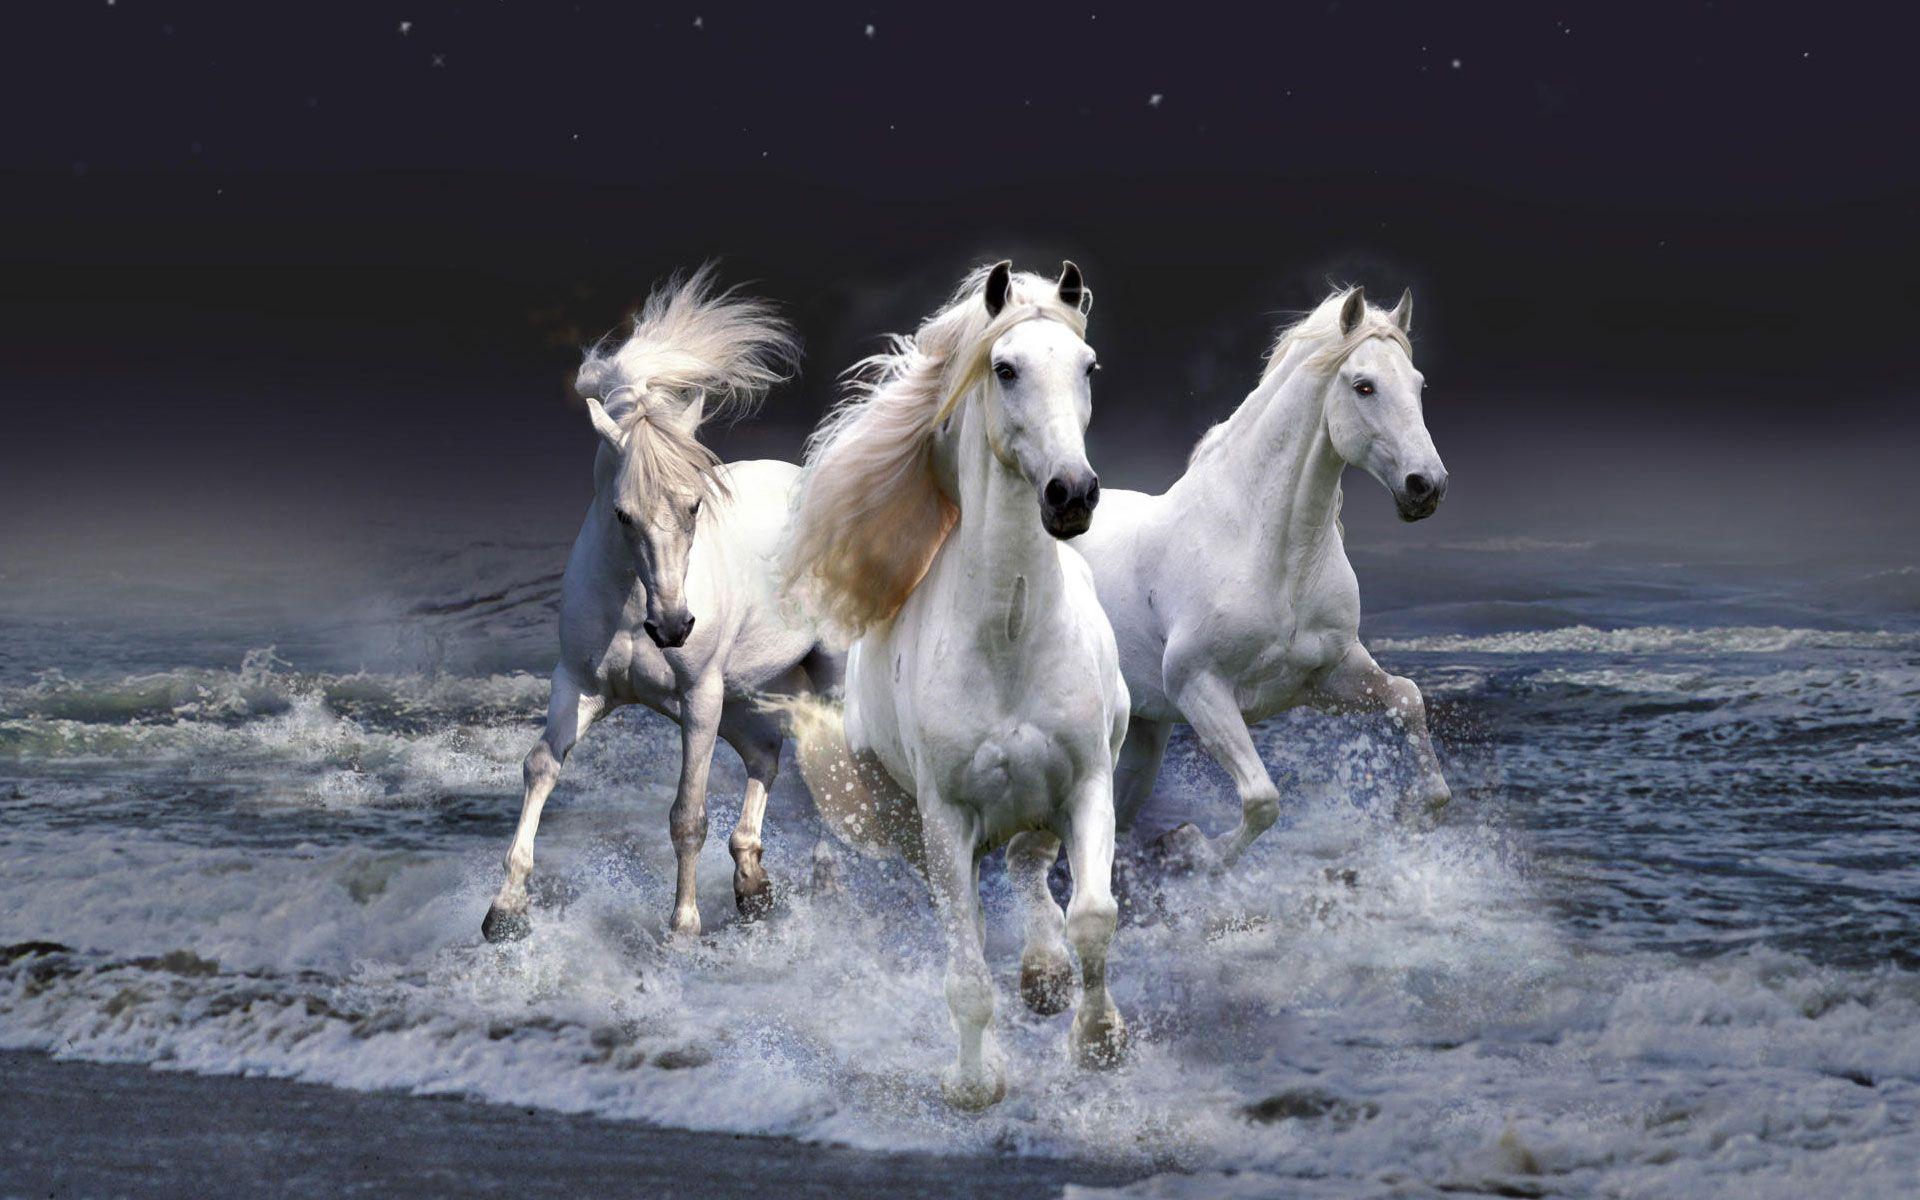 Equestrian Horses HD Wallpaper